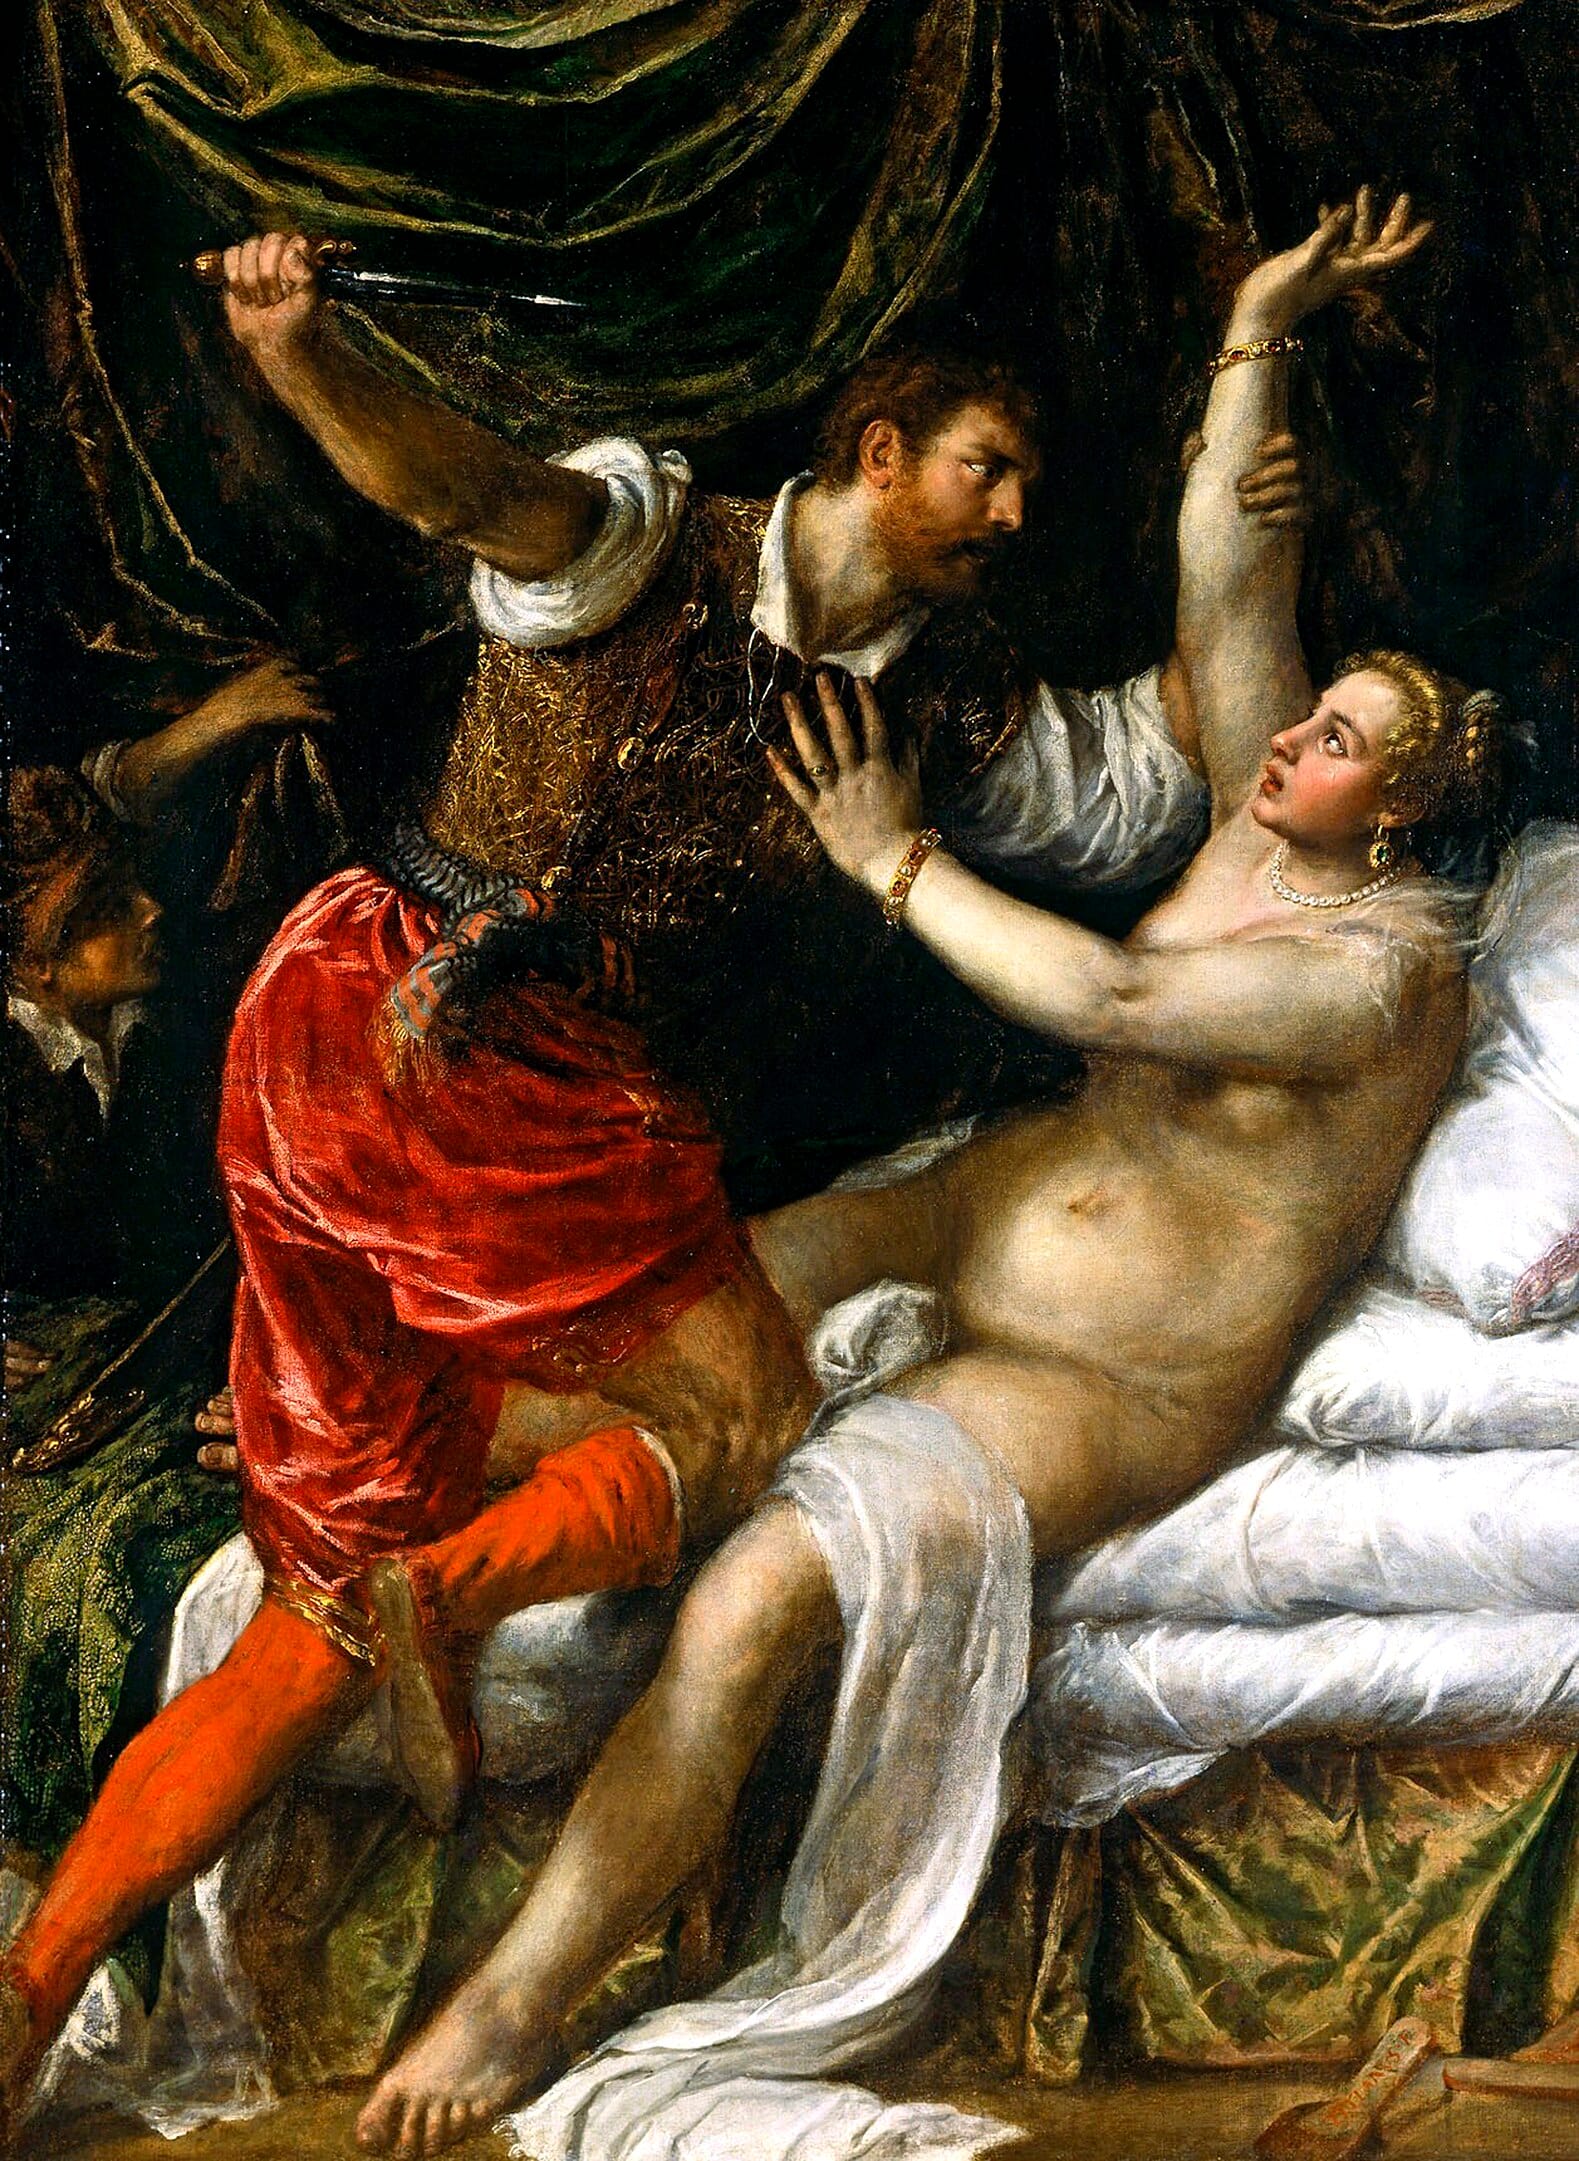 Titian's Tarquin and Lucretia (1571), a depiction of Lucretia's rape by Sextus Tarquinius